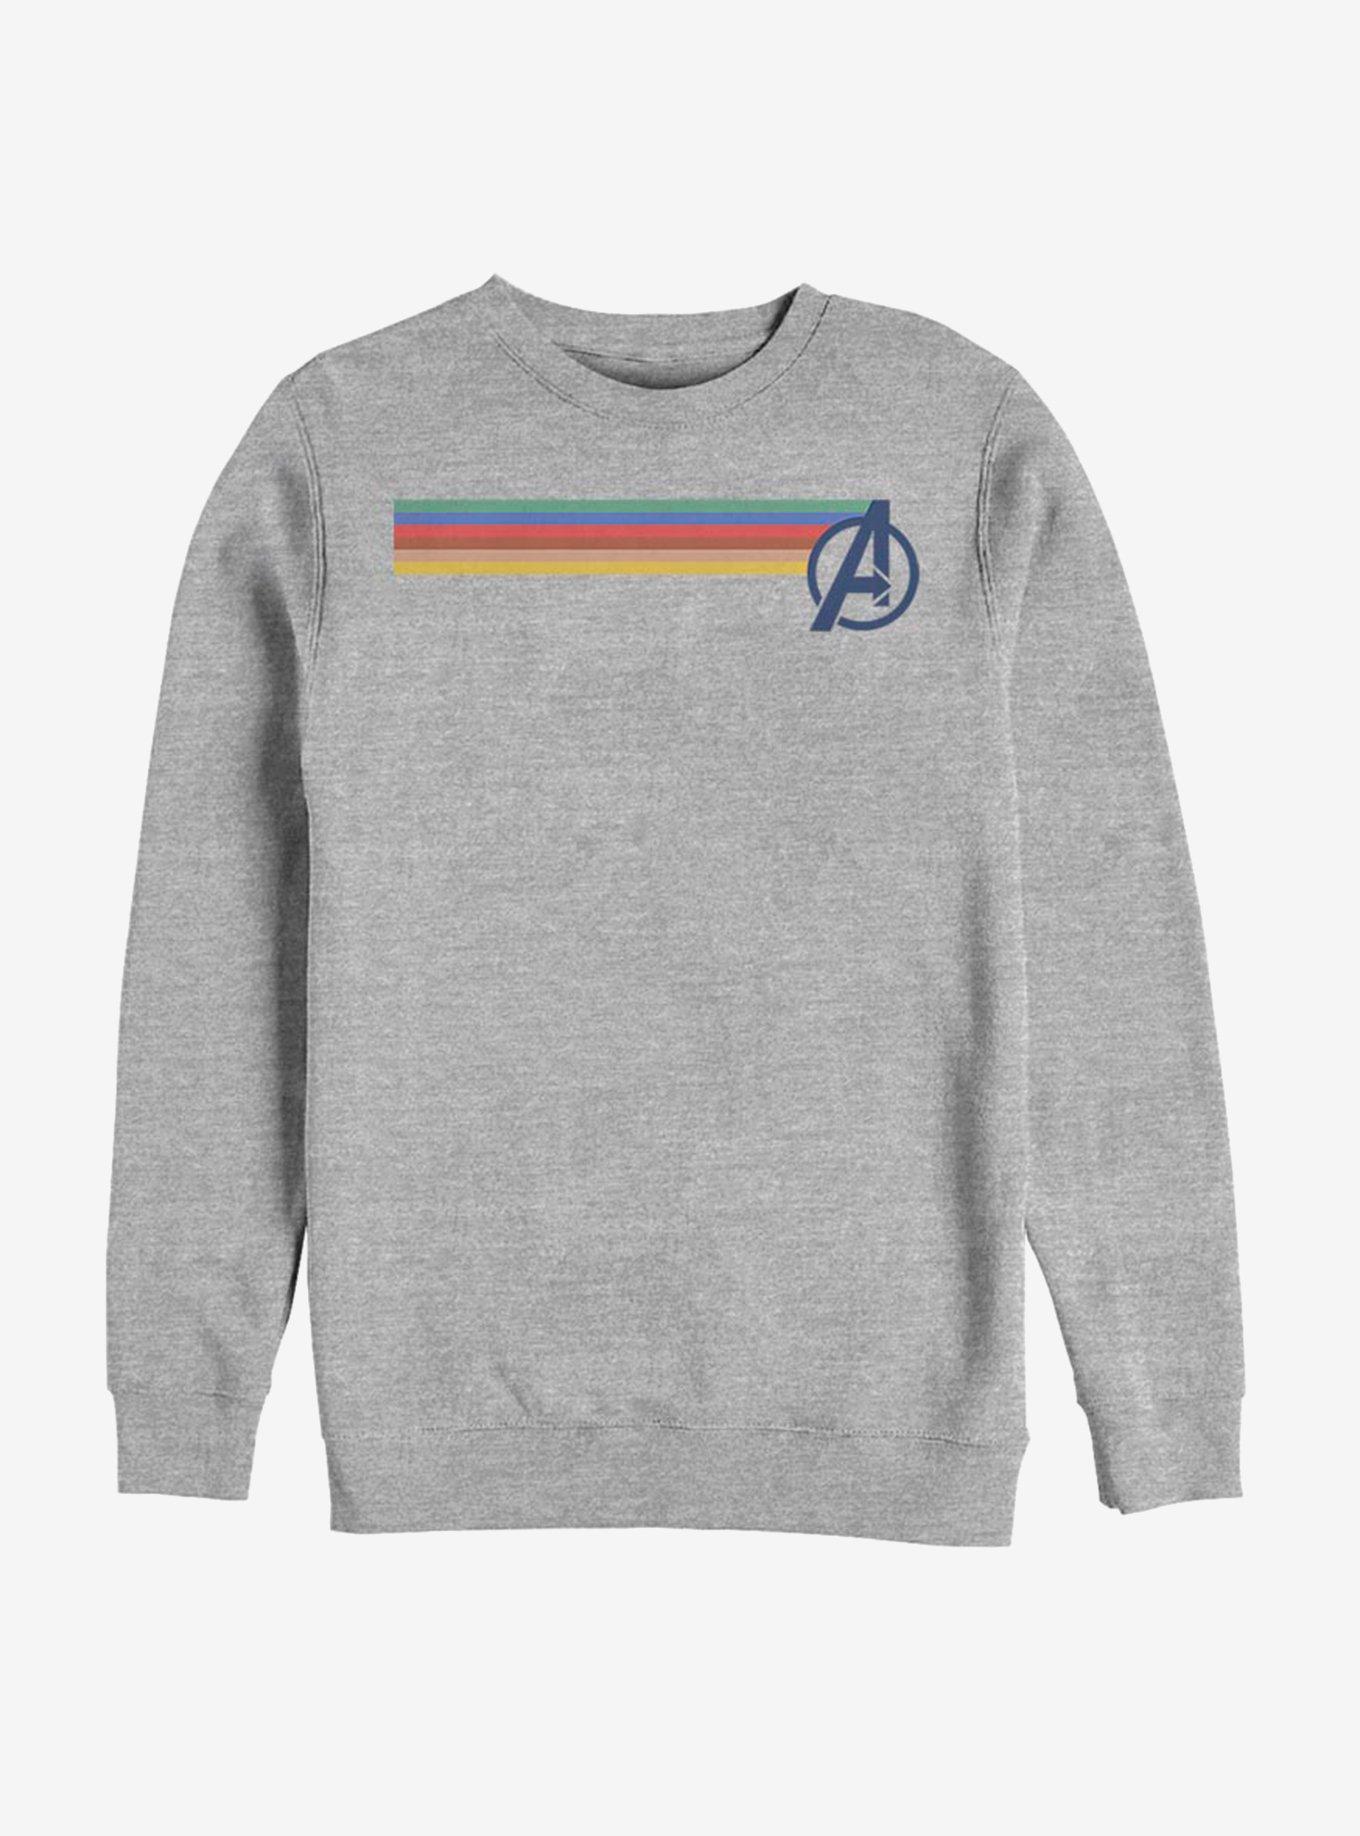 Avengers Multi Stripe Sweatshirt